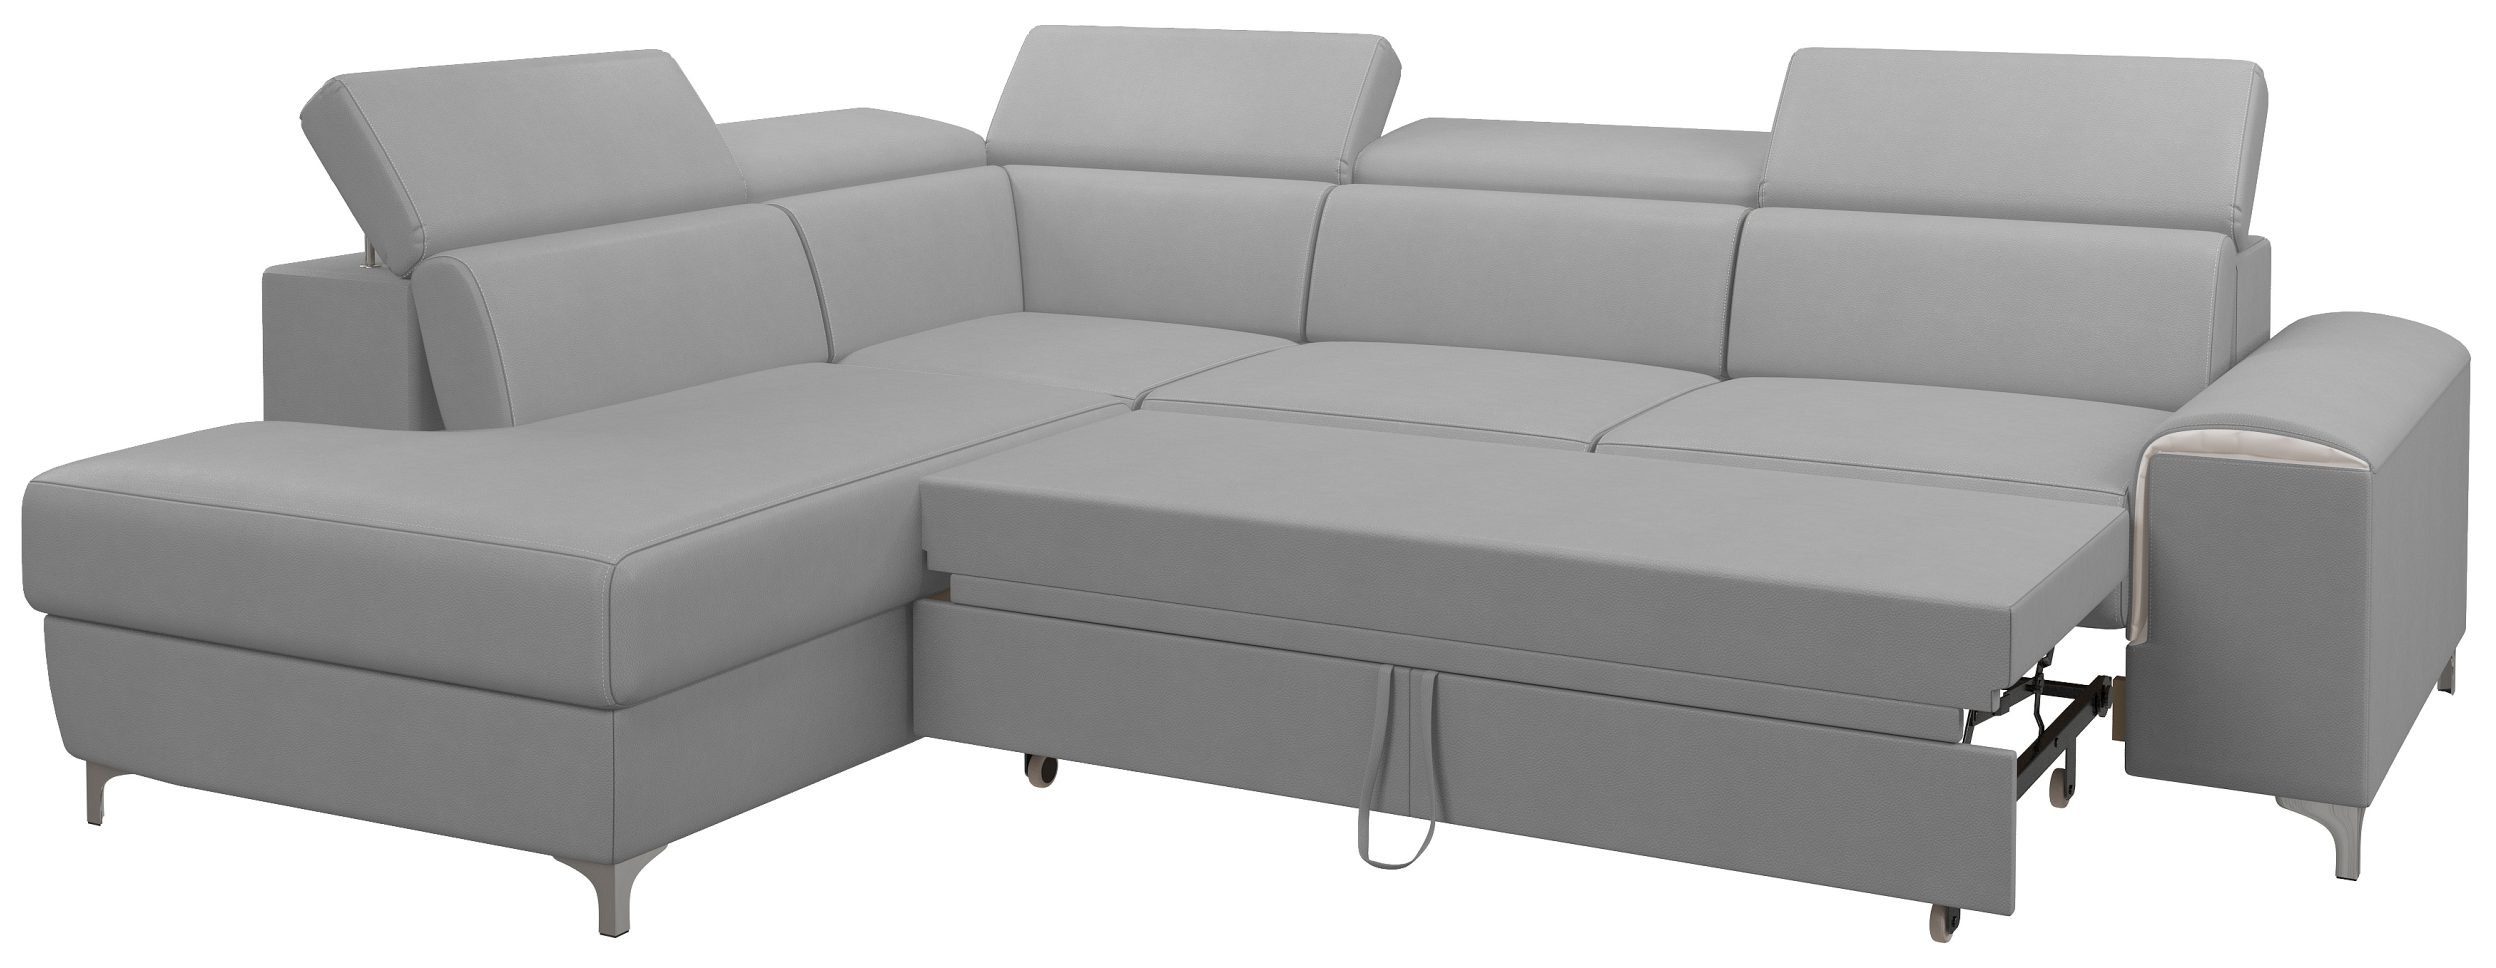 Caio, Bettfunktion, und Sitzkomfort, oder Stylefy Ecksofa links rechts mane bestellbar, stellbar, Bettkasten Design im Eckcouch, L-Form, Modern frei mit Raum